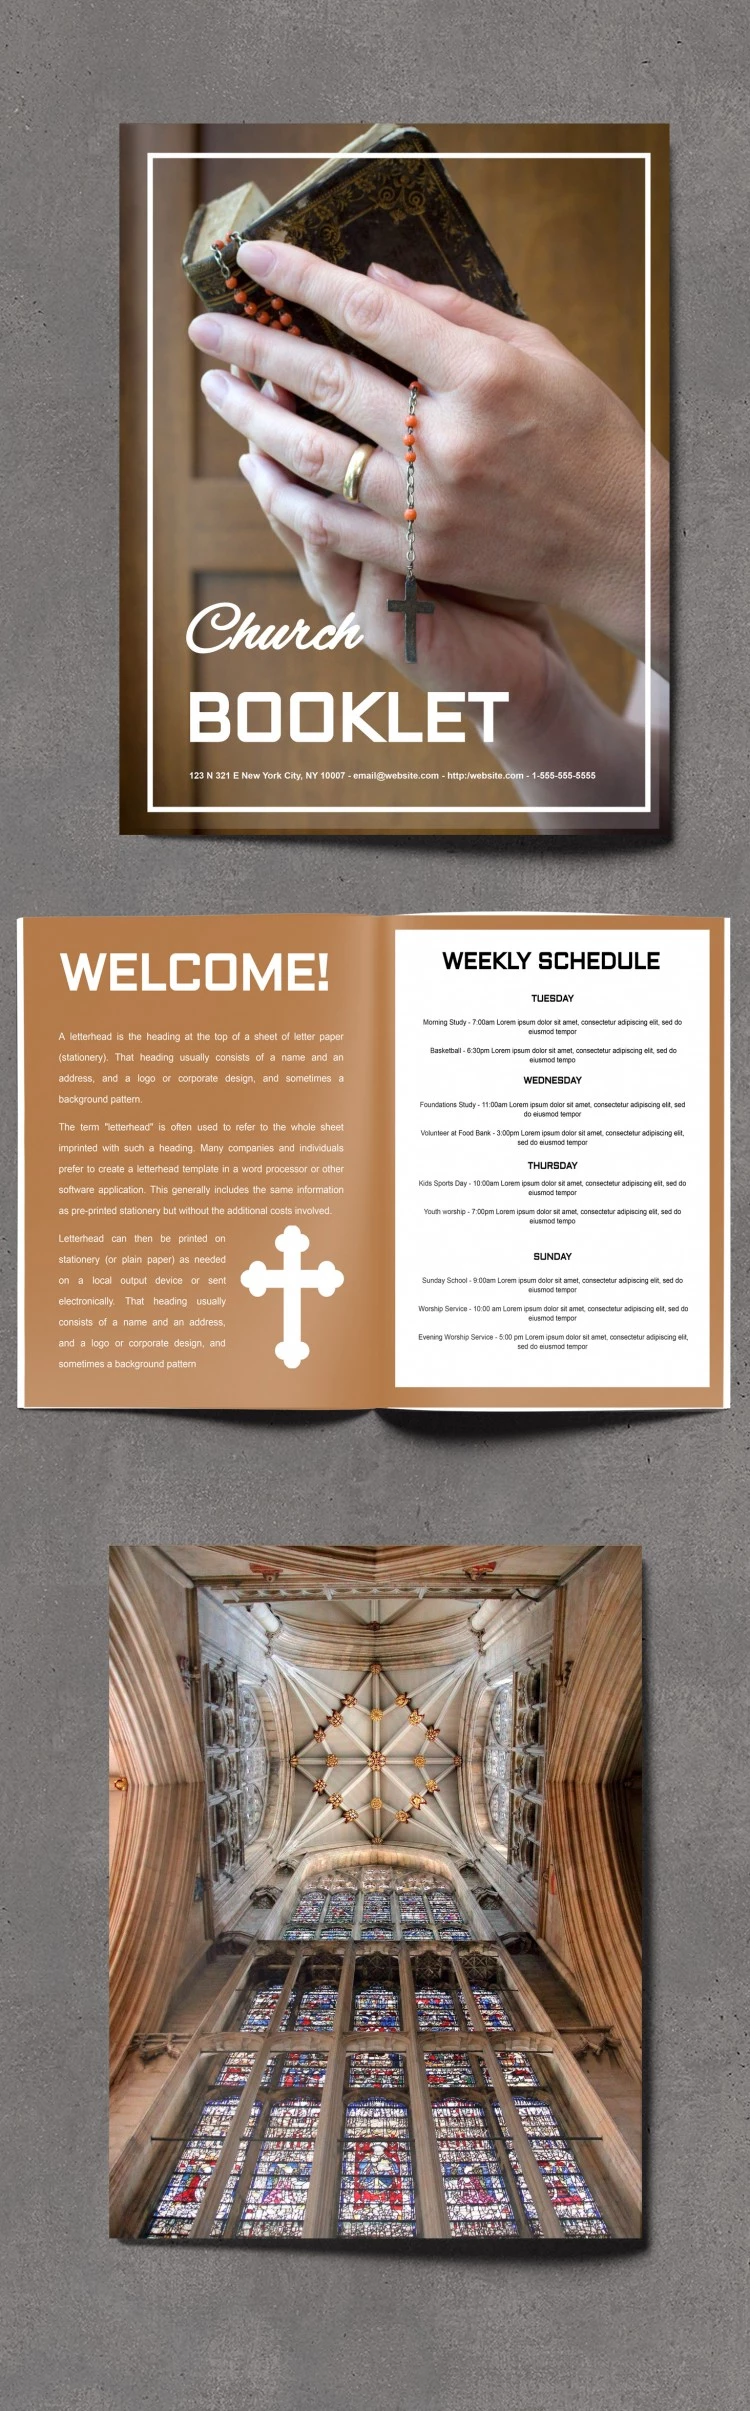 Maravilloso folleto de la iglesia - free Google Docs Template - 10061838